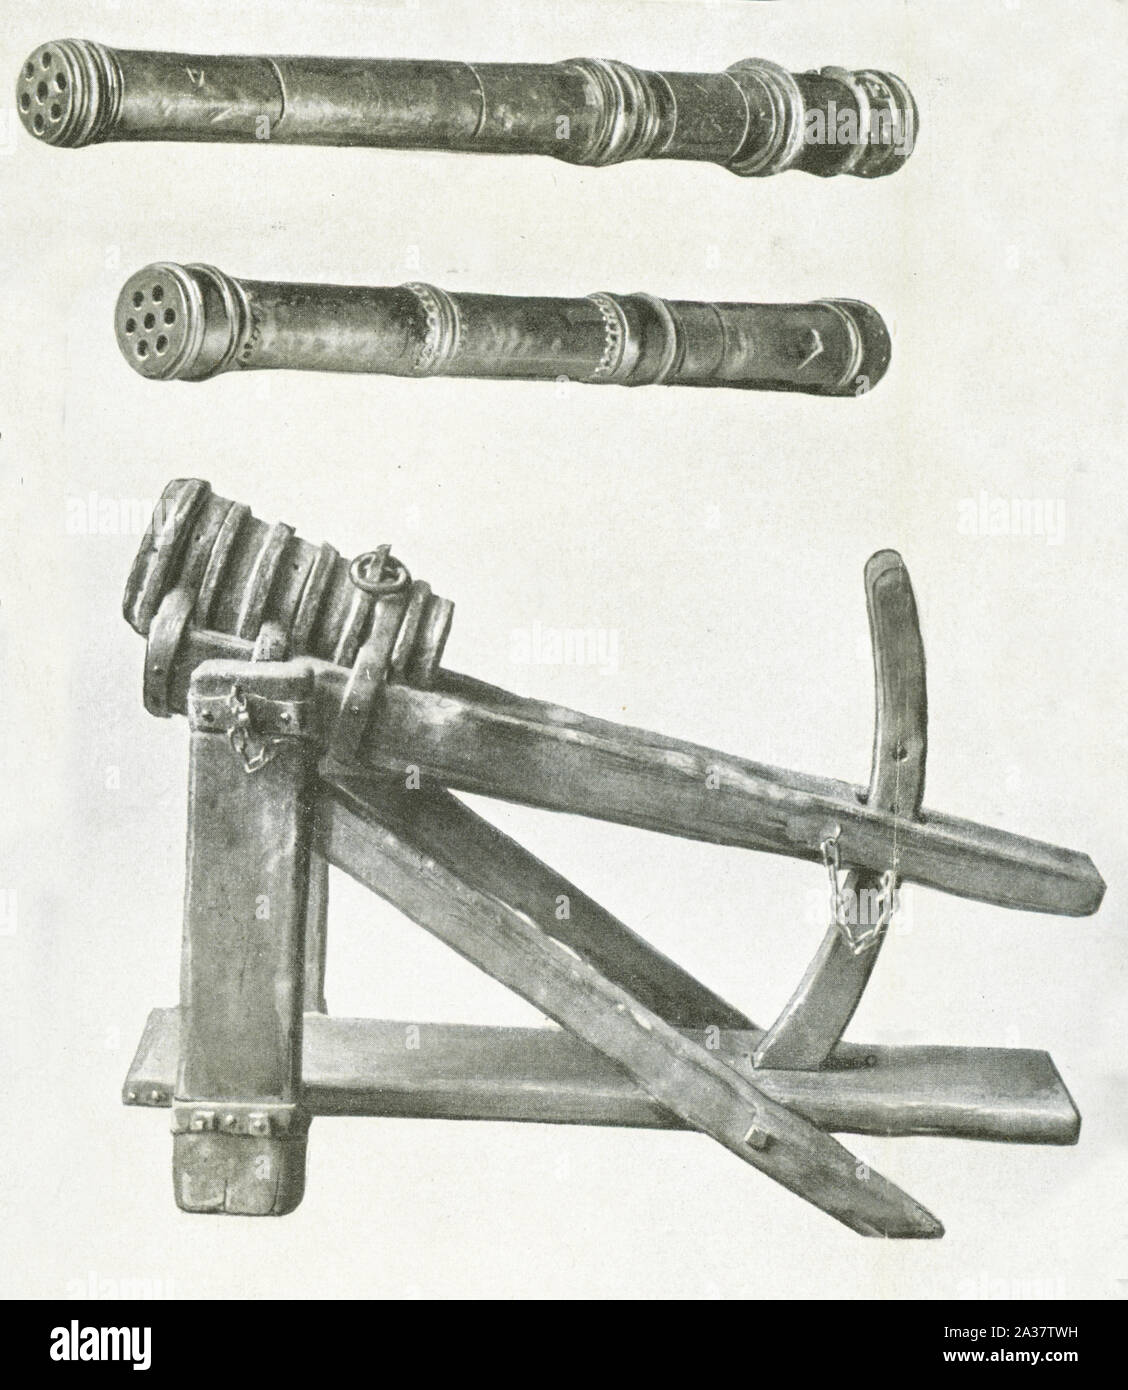 Cette image montre trois armes médiévales. Les deux ont des tuyaux rotatifs pour charger les munitions. Elles sont rotatives Cannon. Mesurer un peu moins de six pieds de longueur et jusqu'à la fin des années 1600. L'arme en bas remonte à 1450-1500. Il agit comme une catapulte. Banque D'Images